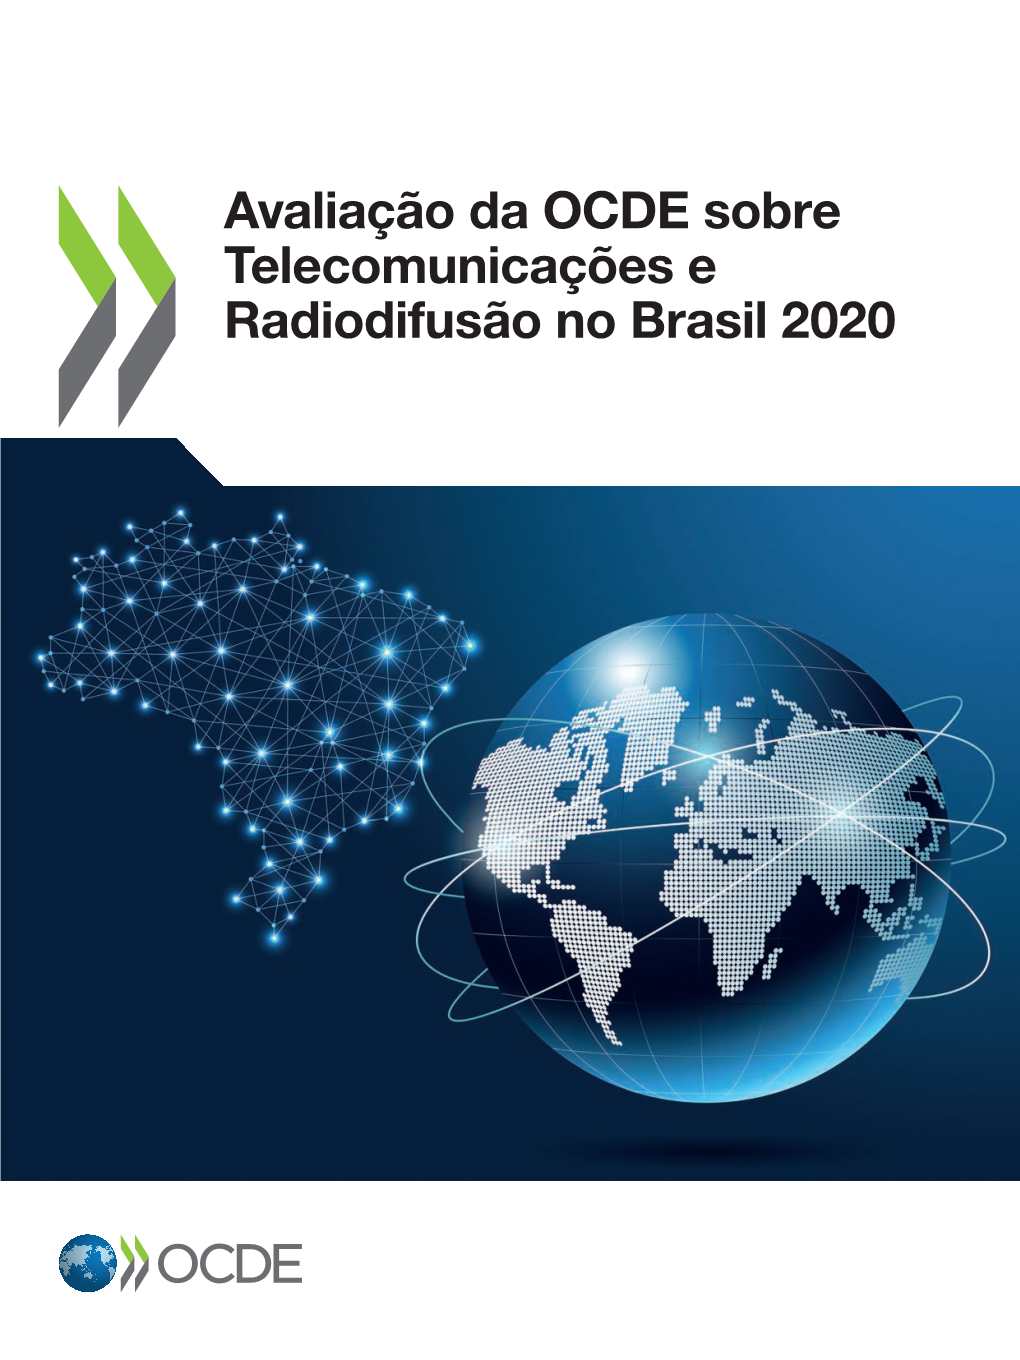 Telecomunicações E Radiodifusão No Brasil 2020